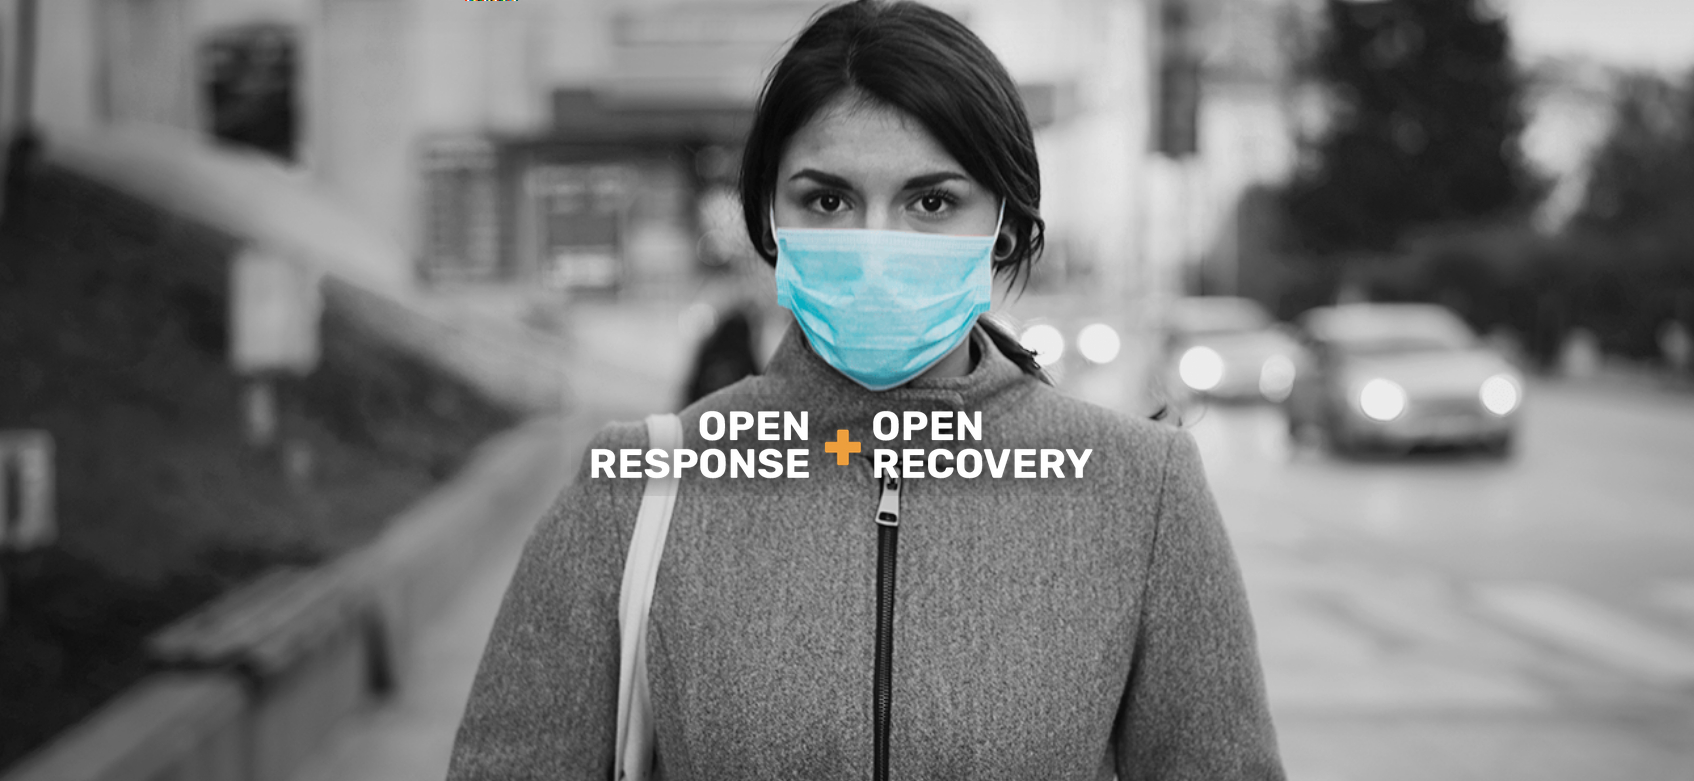 Hintergrundbild einer jungen Frau mit medizinischer Maske, darüber steht "Open Response and Open Recovery"